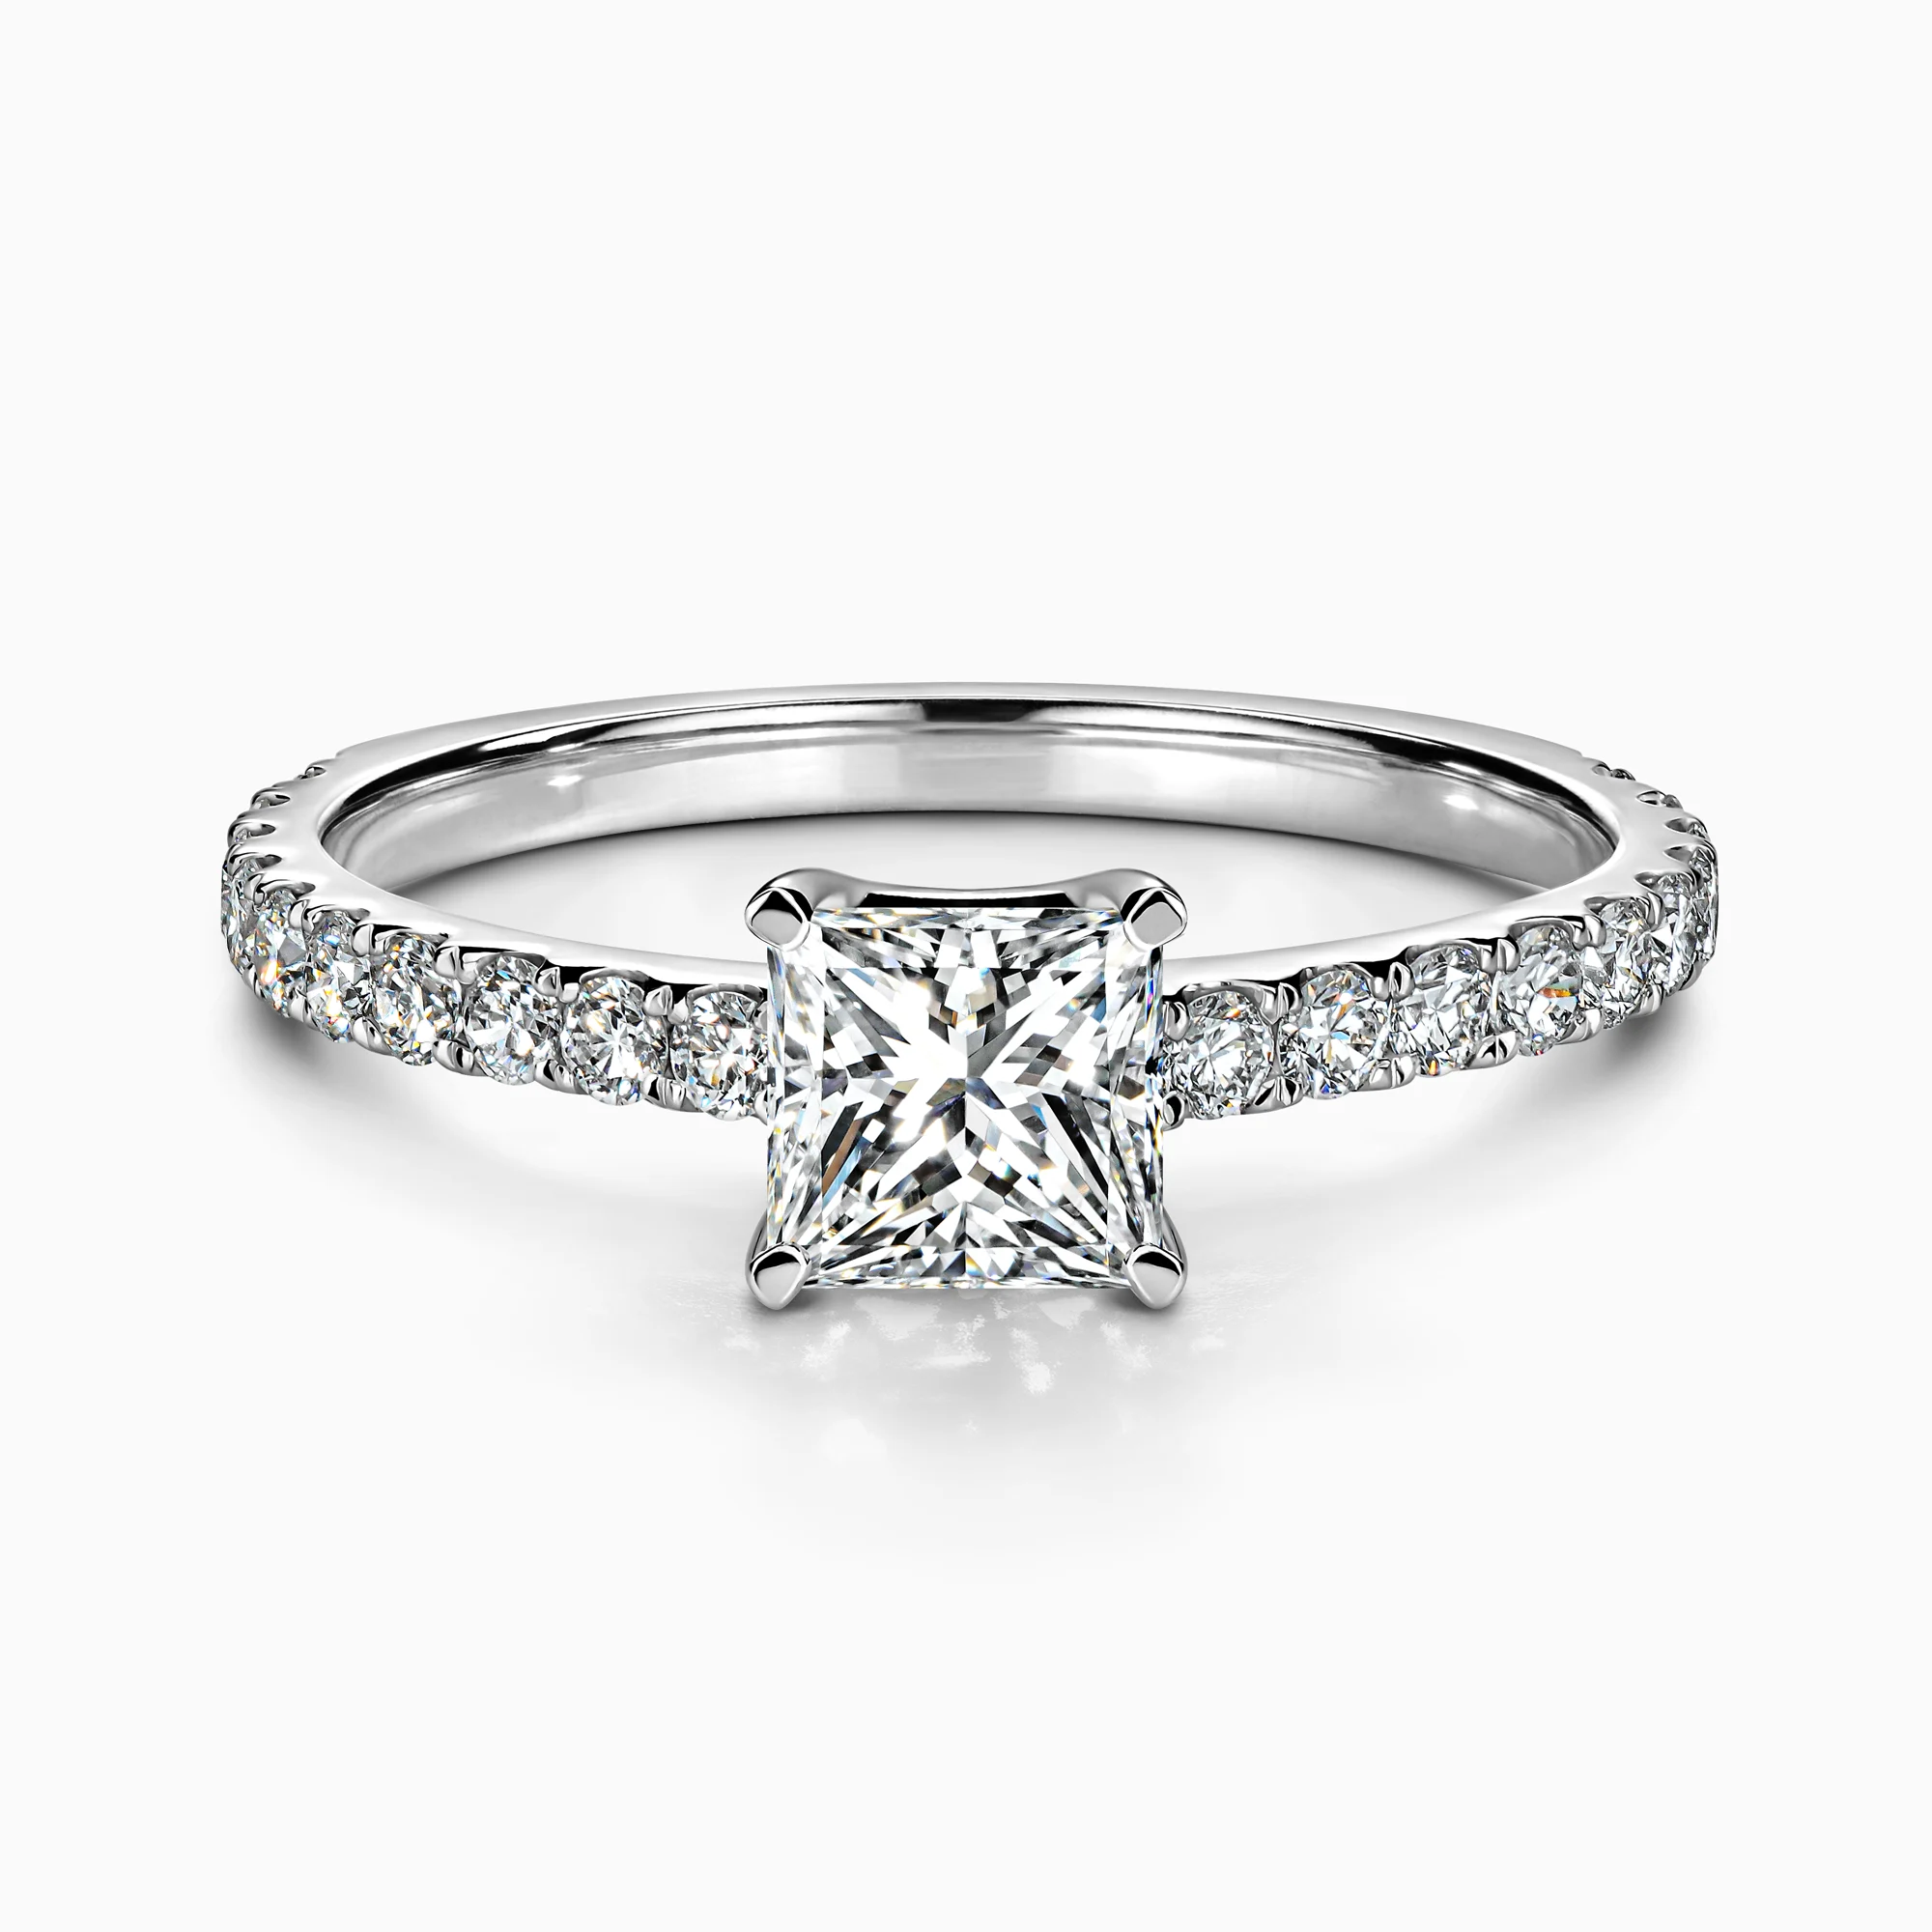 Помолвочное кольцо с бриллиантом огранки принцесса La Tentation (Искушение), артикул 4U2981-PR